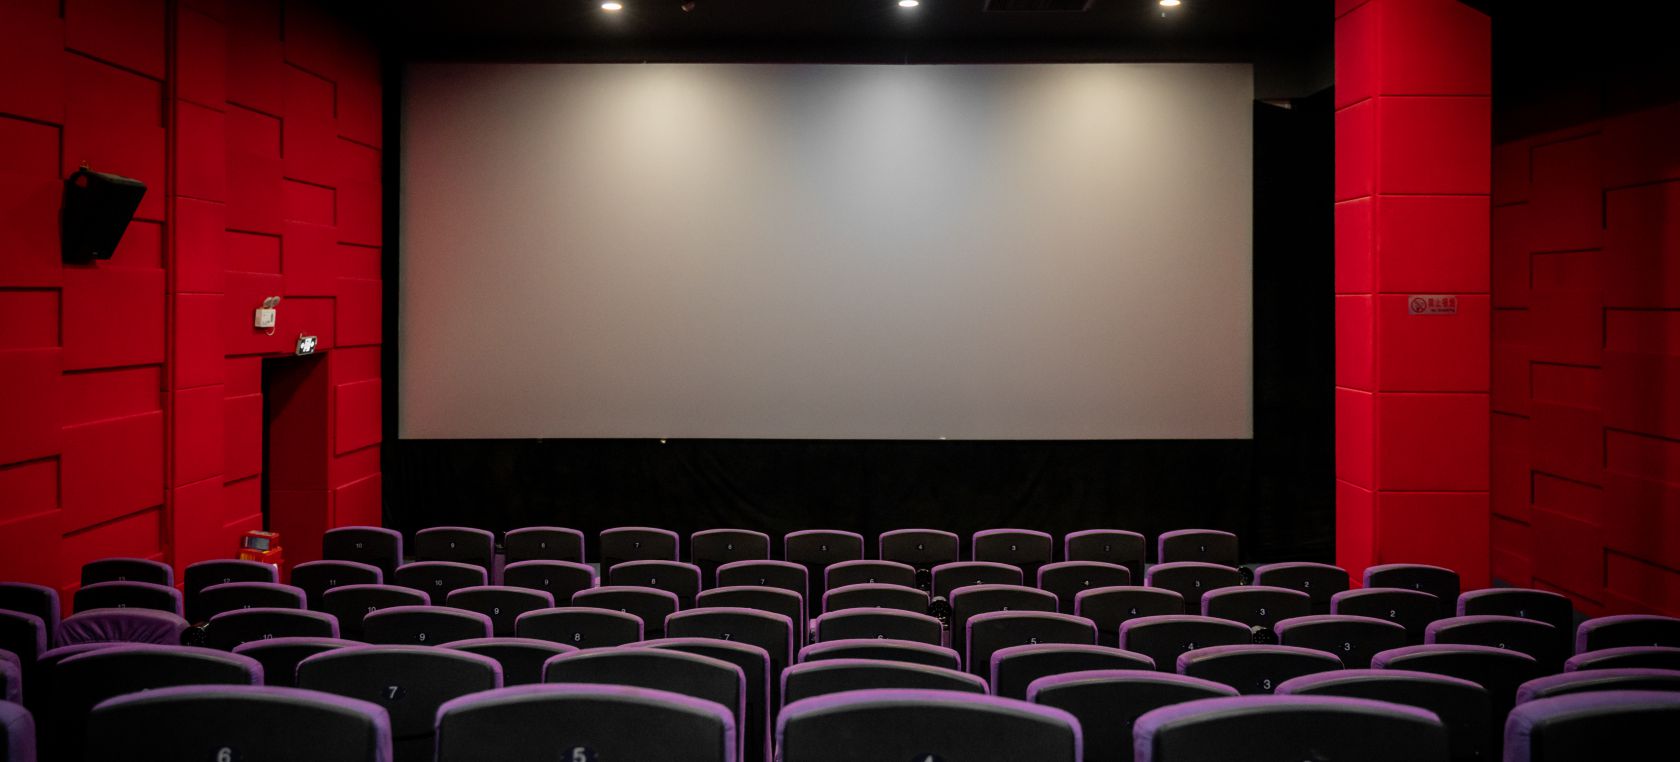 La Fiesta del cine 2022 ya tiene fechas: entérate de cuándo poder ir al cine a precio reducido